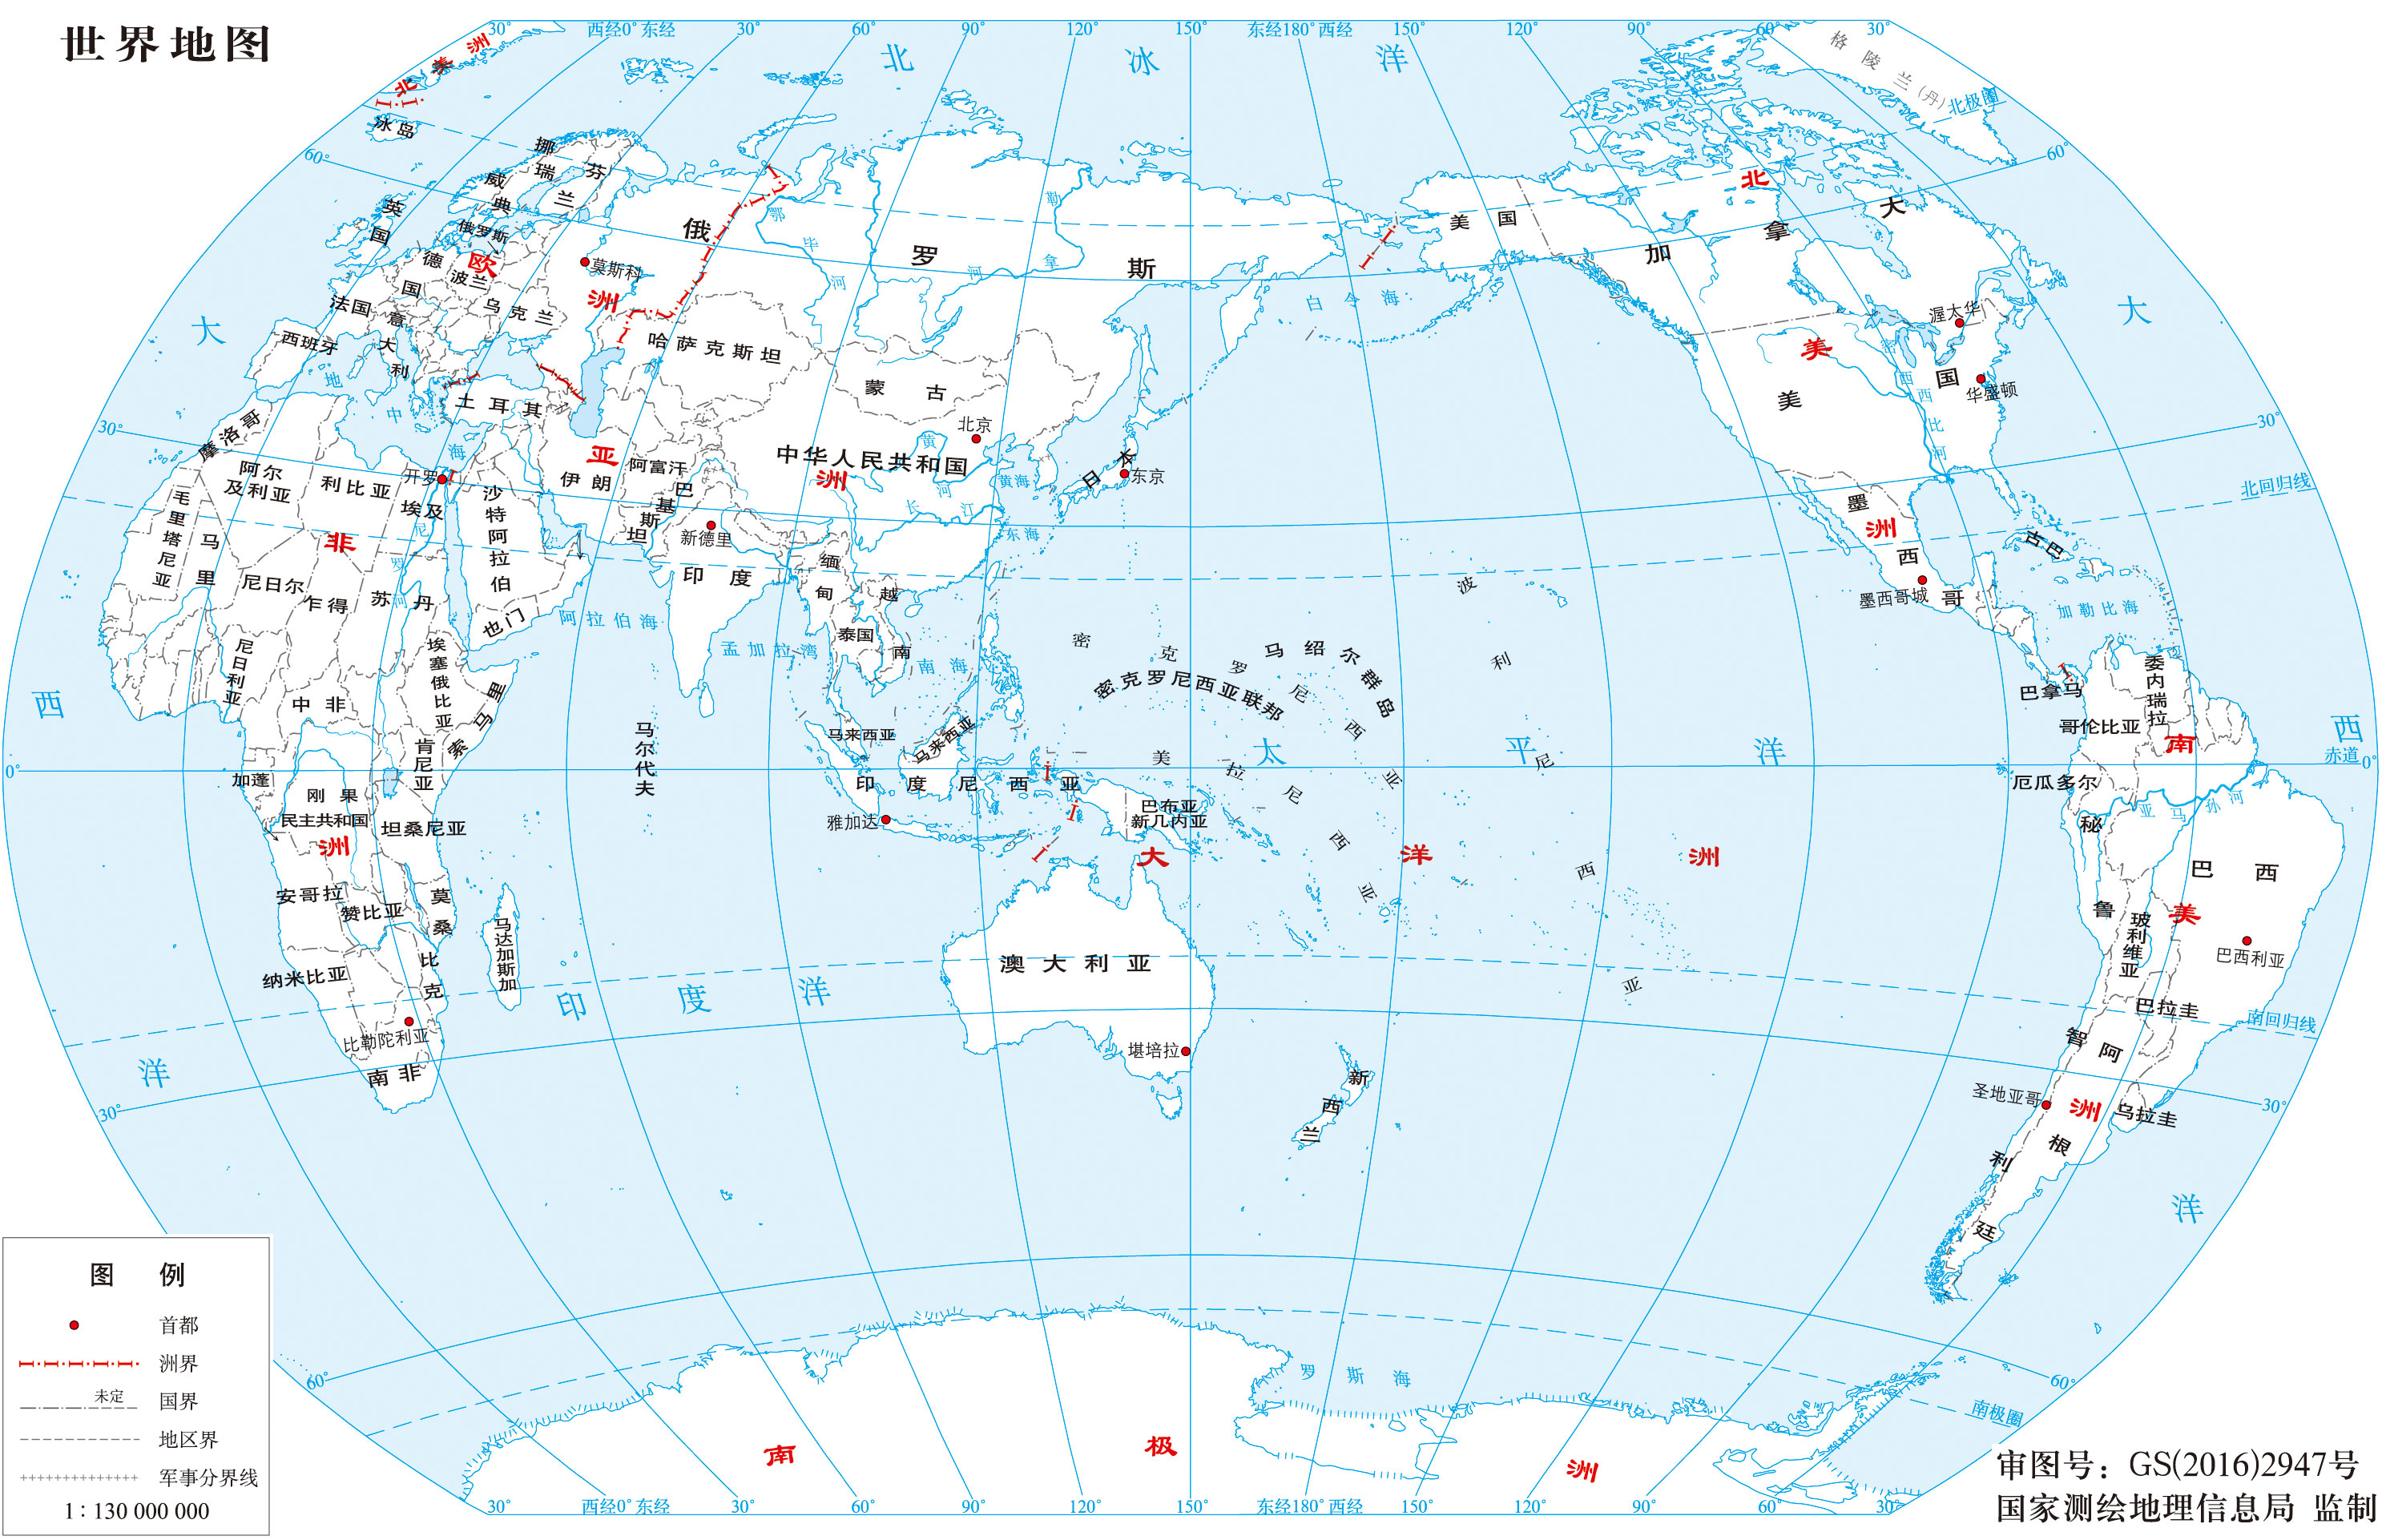 世界各国 | 中国各地 | 返回首页 栏目导航:世界地图  中国地图